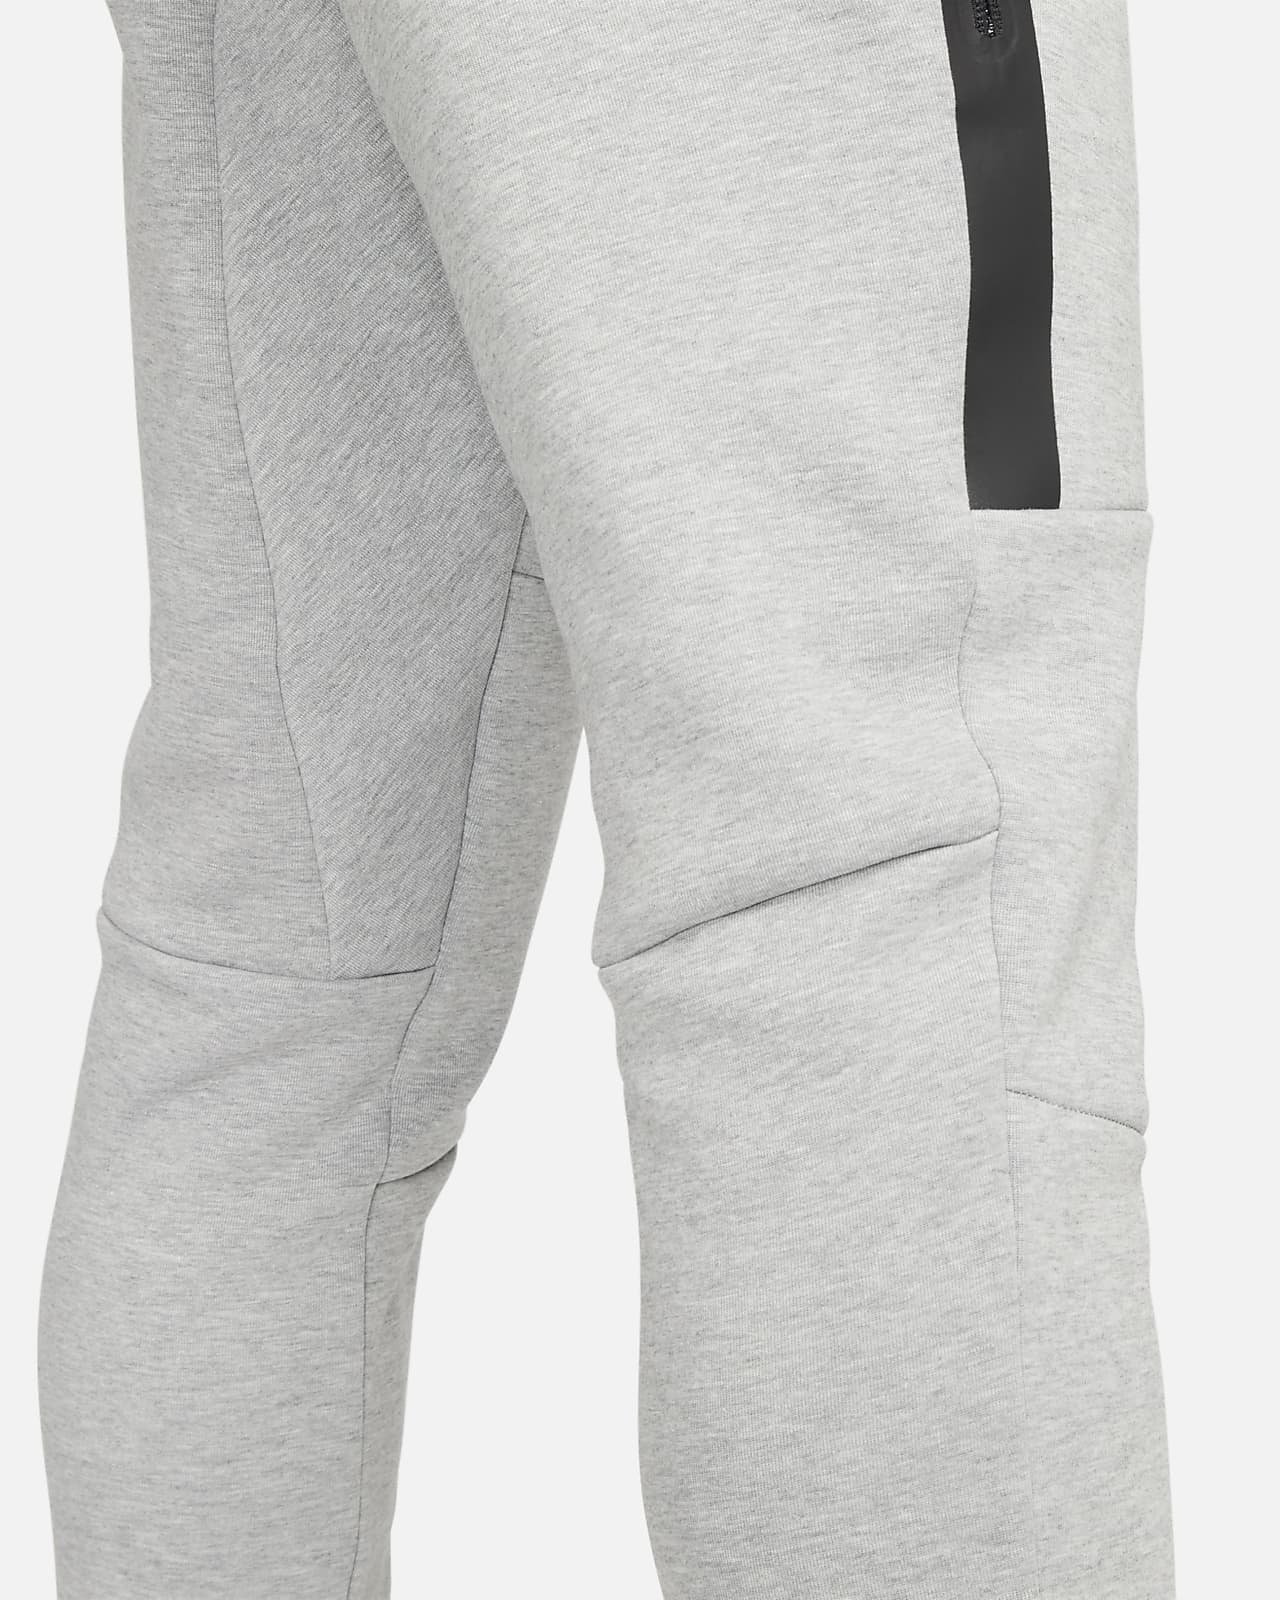 Bas de jogging Nike Tech Fleece Slim Fit Beige & Blanc pour Homme